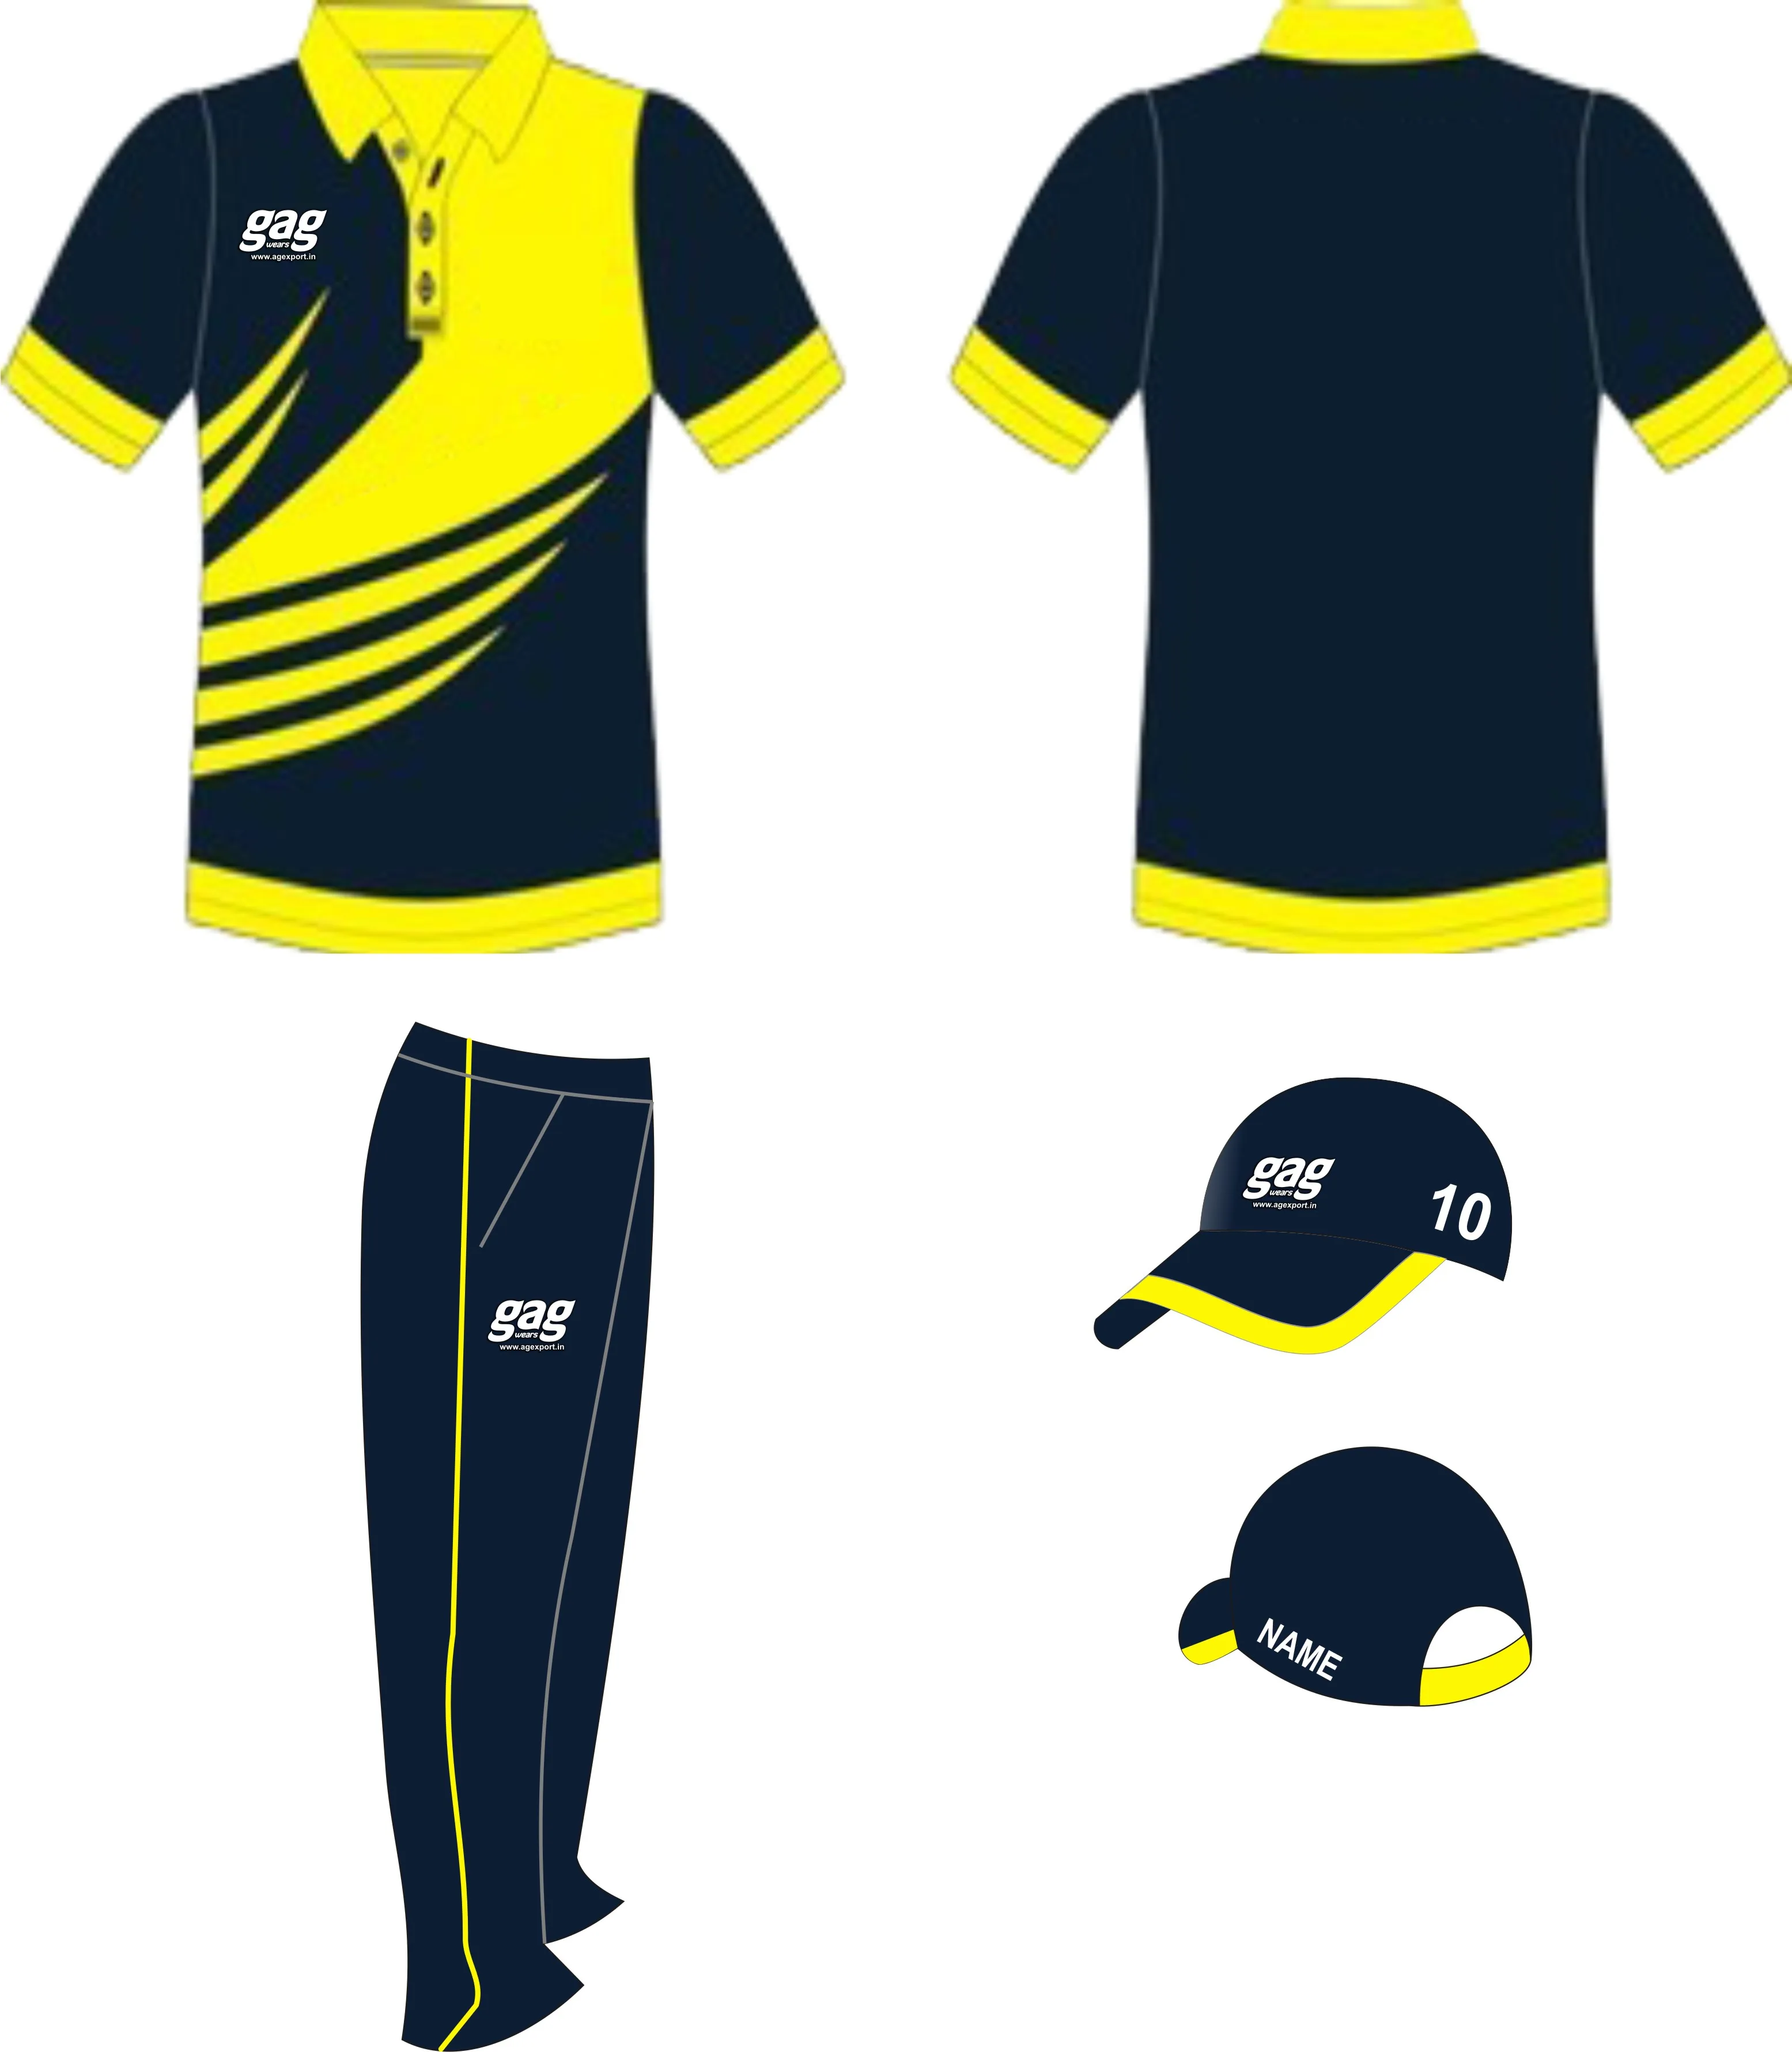 design cricket jersey online